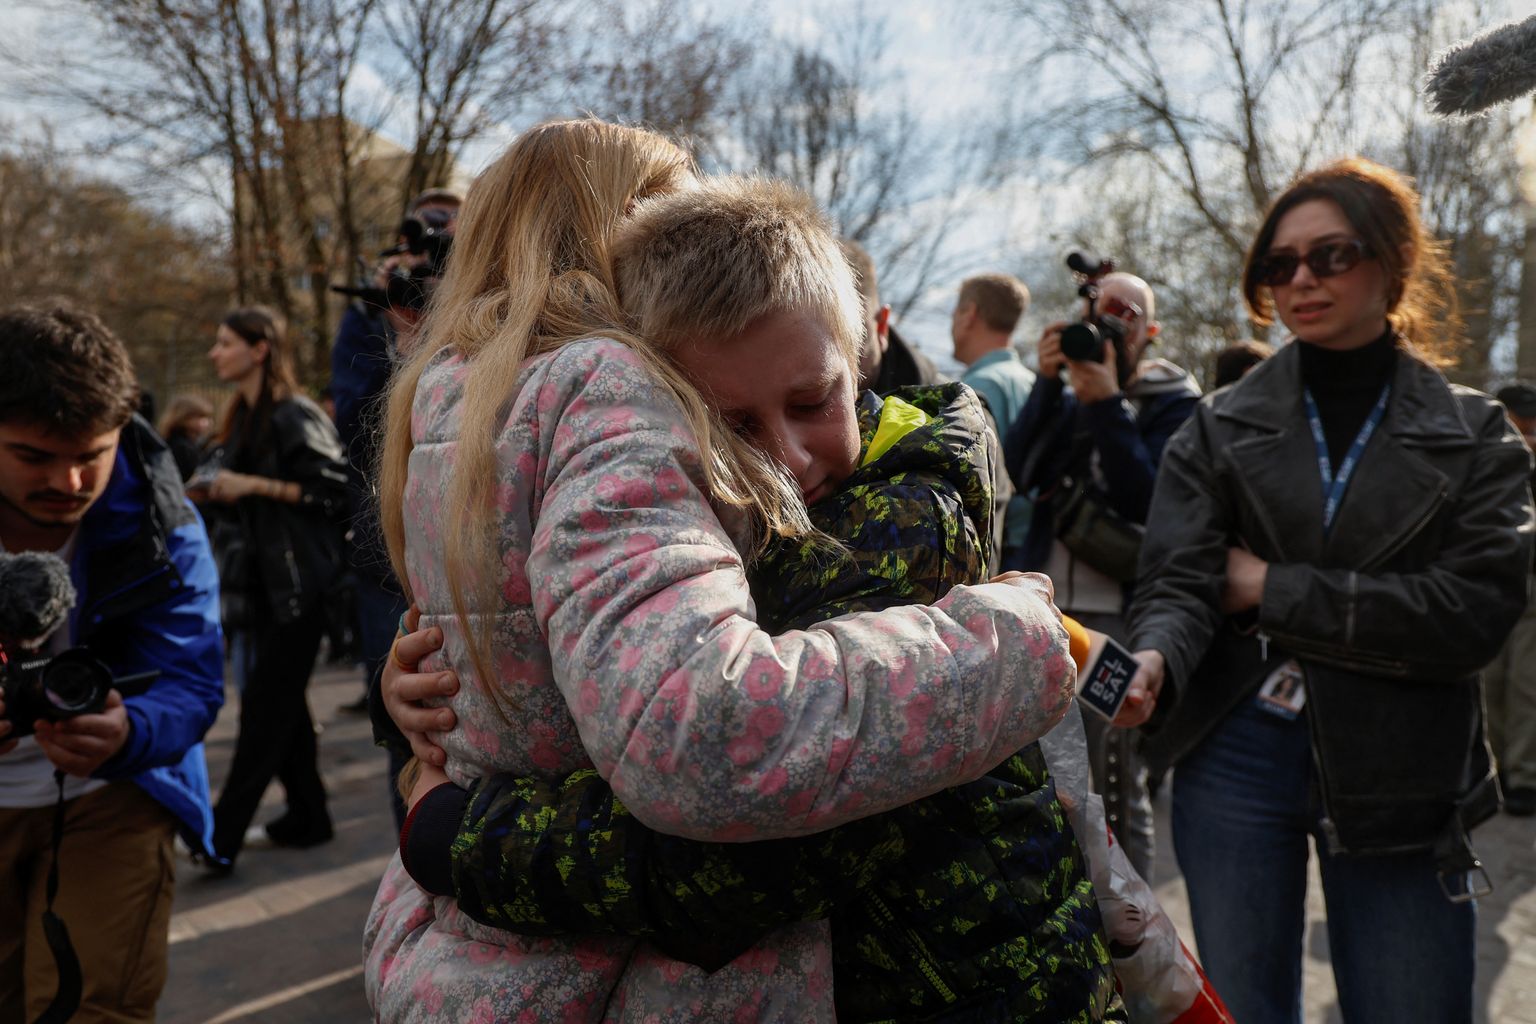 Irõna kallistamas oma 13-aastast poega Bohdanit, kes päästeti Venemaa «suvelaagrist», kuhu laps okupeeritud aladelt viidi.